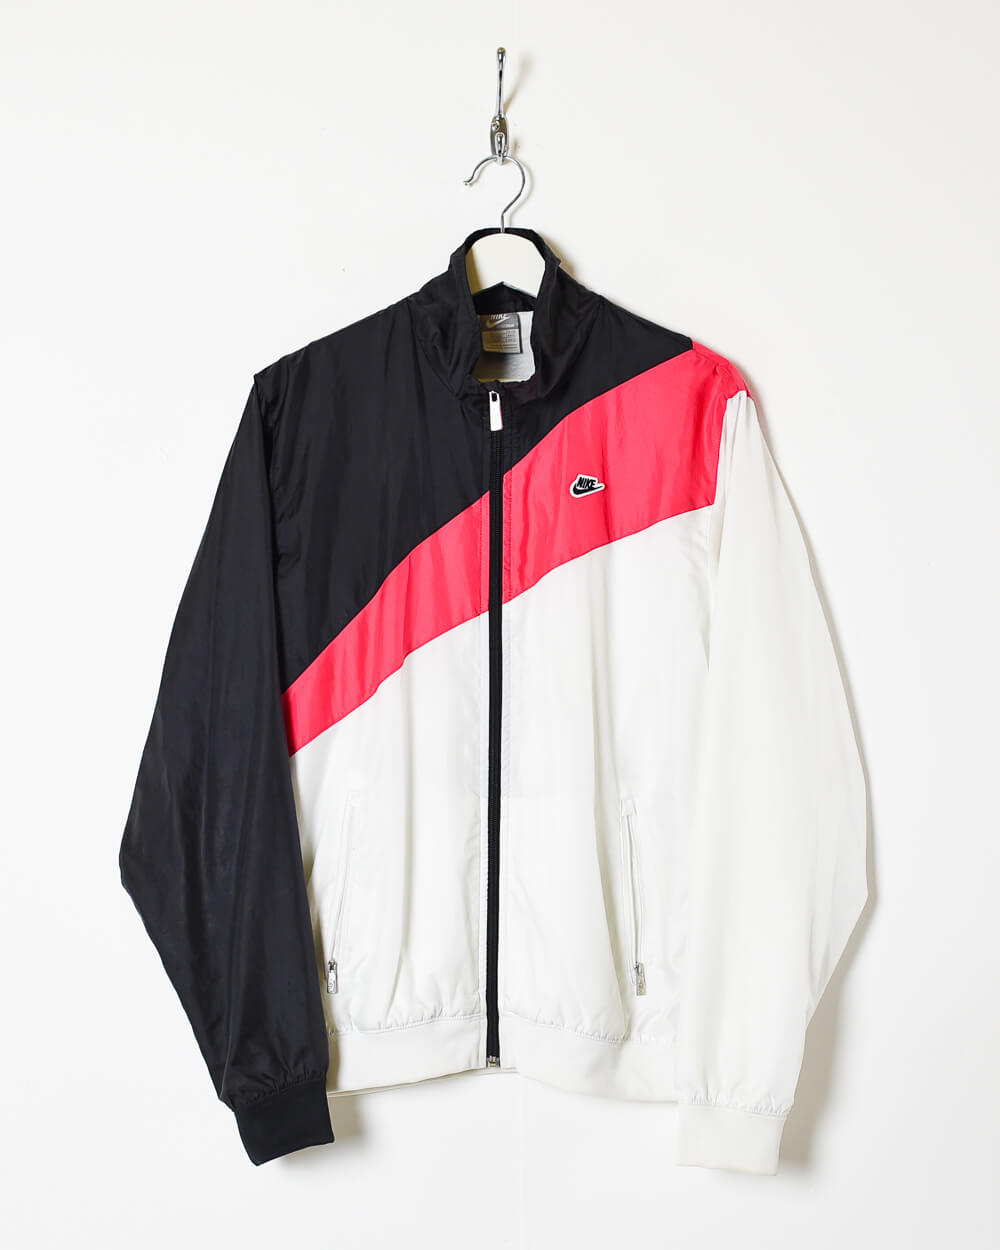 White Nike Shell Jacket - Medium